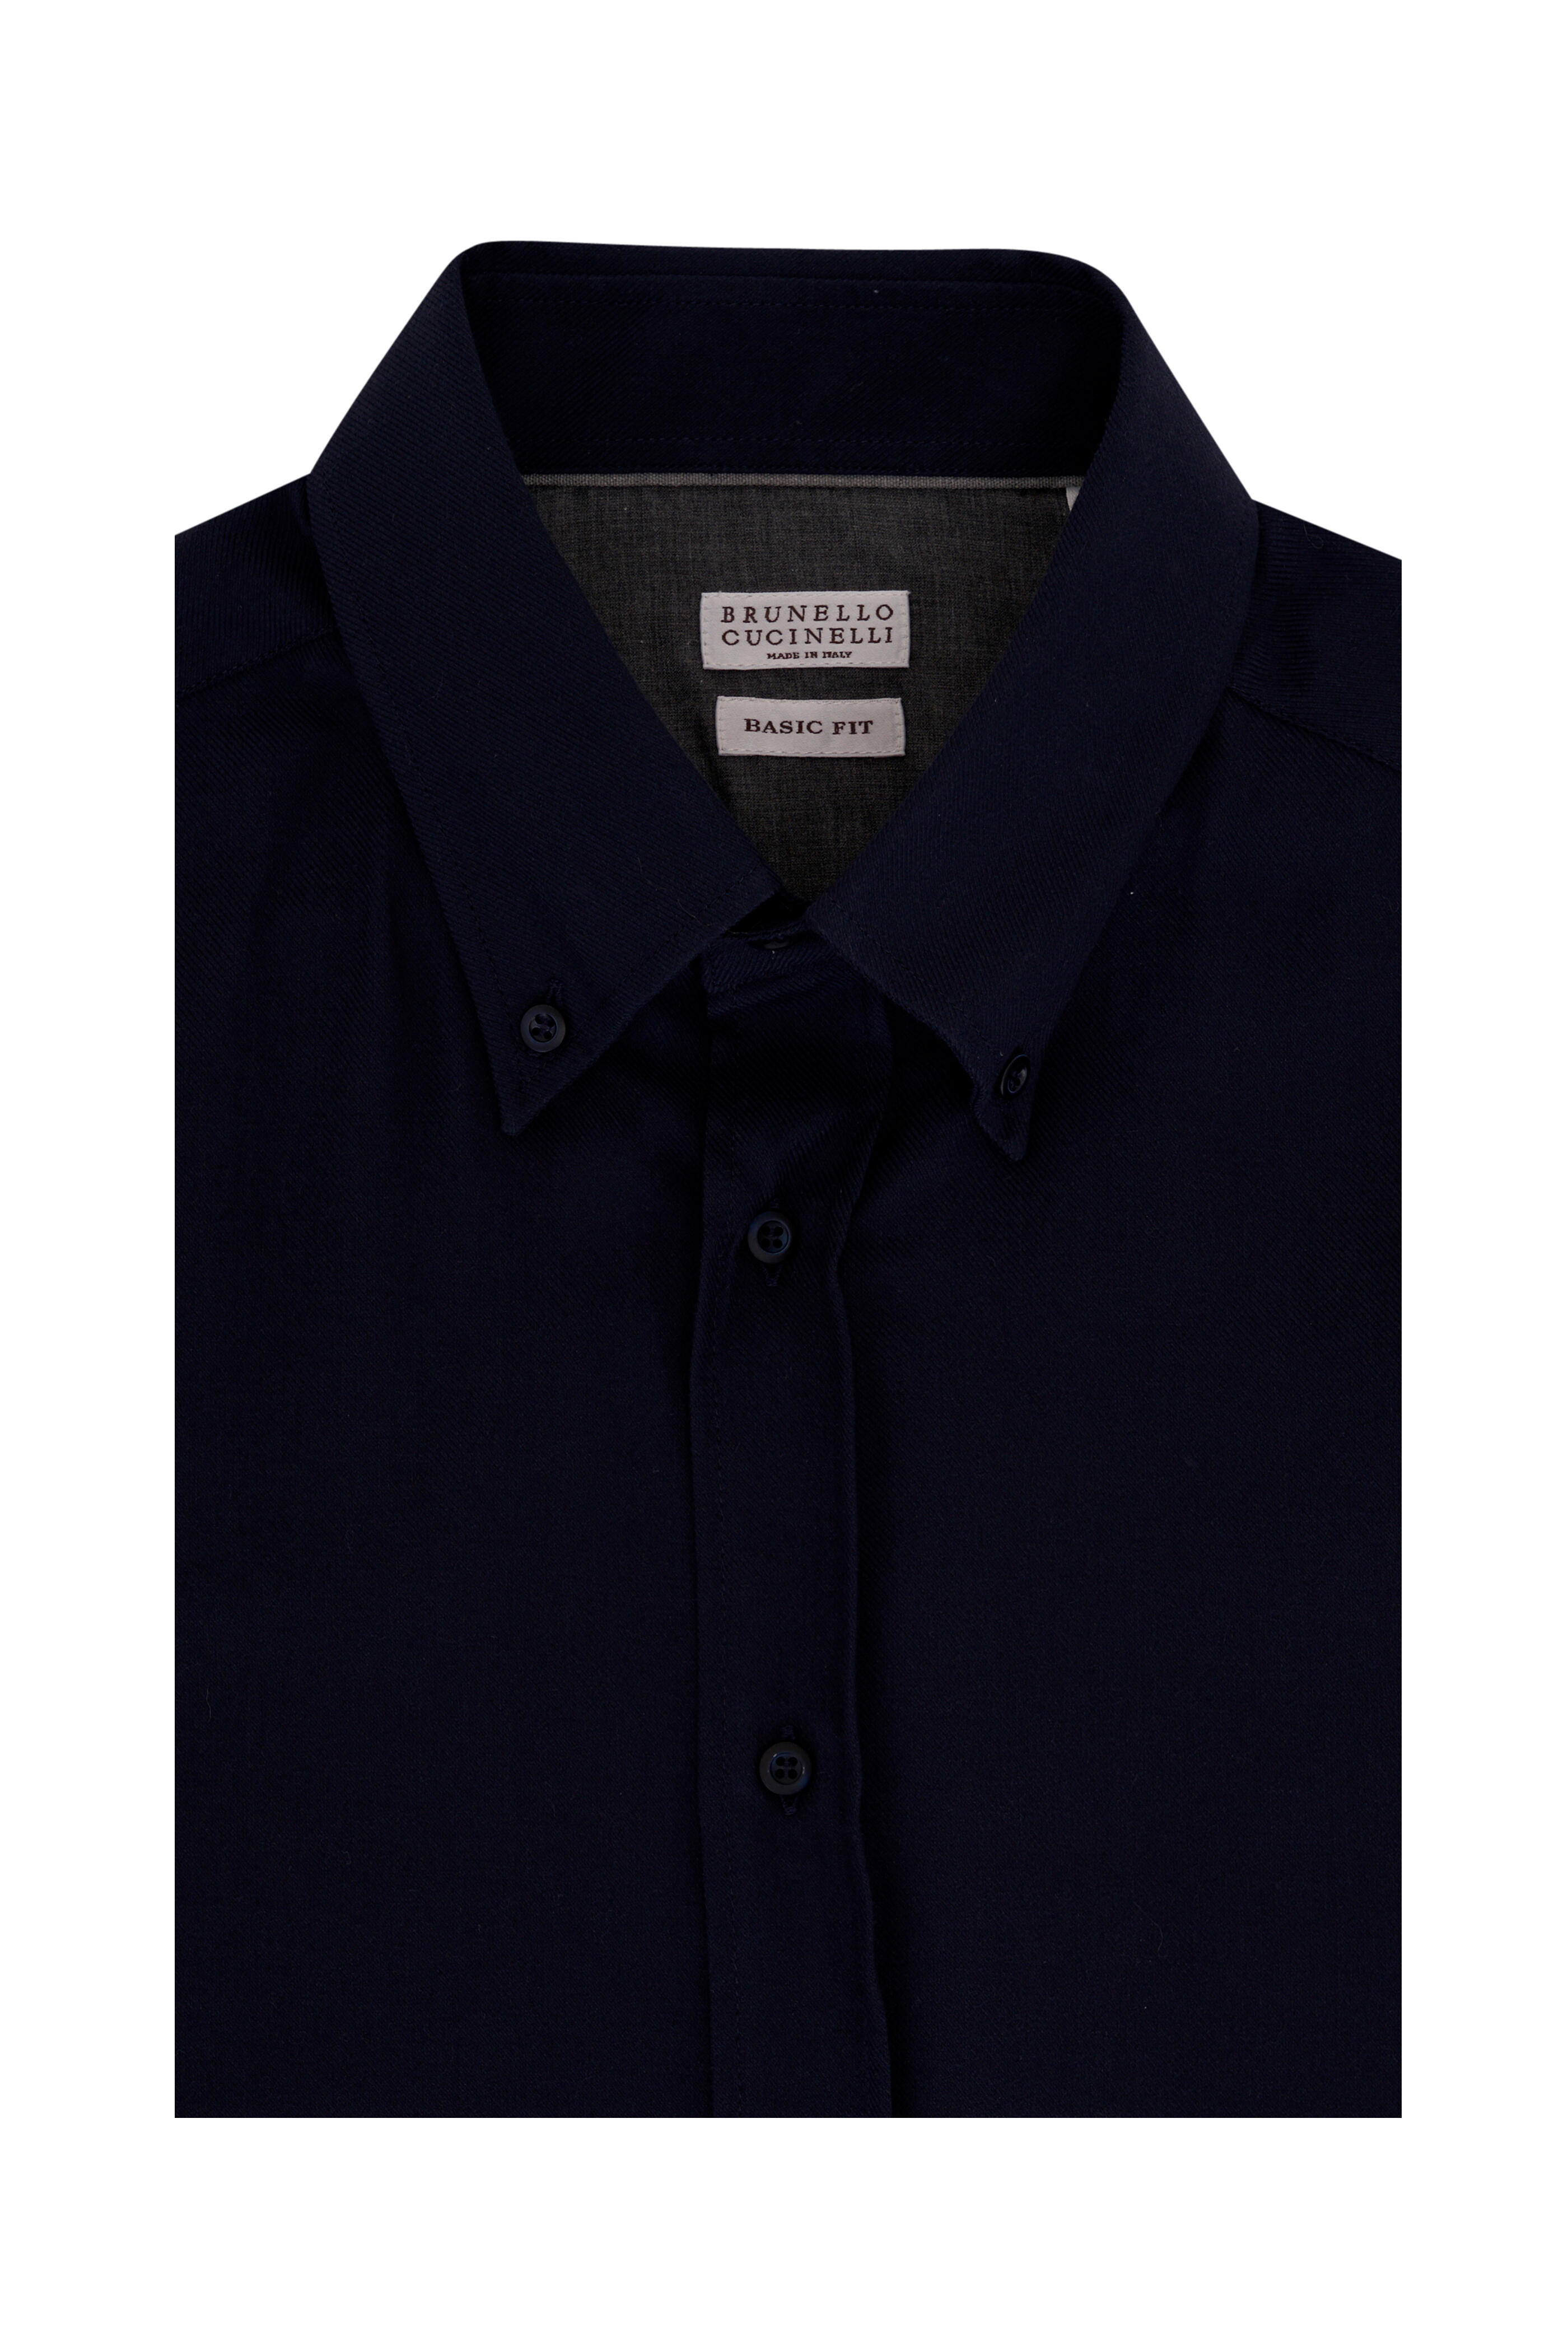 Brunello Cucinelli - Navy Cotton & Cashmere Knit Sport Shirt